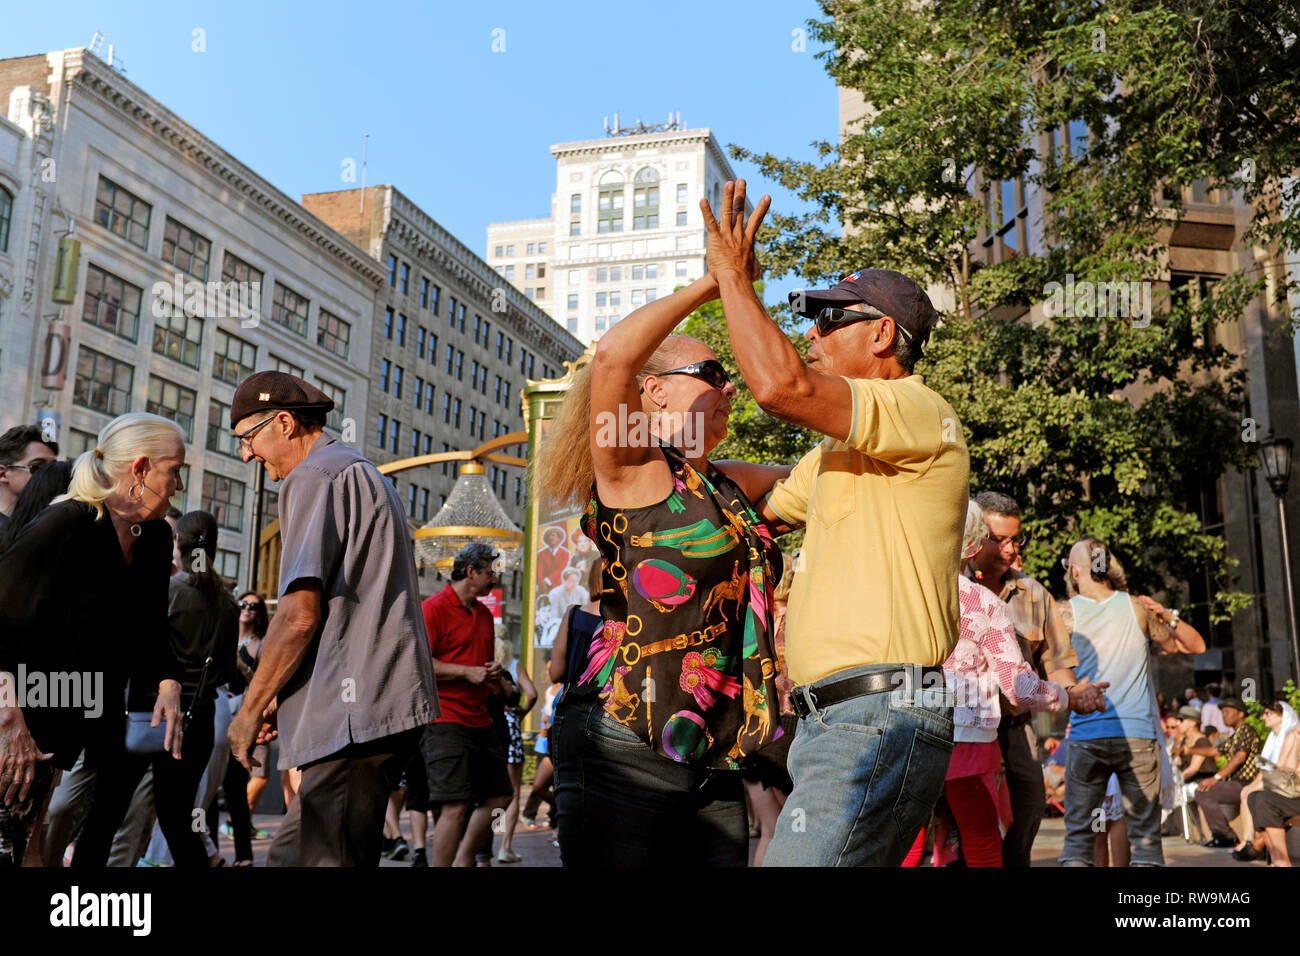 Eine vielfältige Gruppe von Menschen tanzt im Freien im Playhouse Square Theatre District während des wöchentlichen Tanz-/Konzertprogramms im Sommer in Cleveland, Ohio. Stockfoto